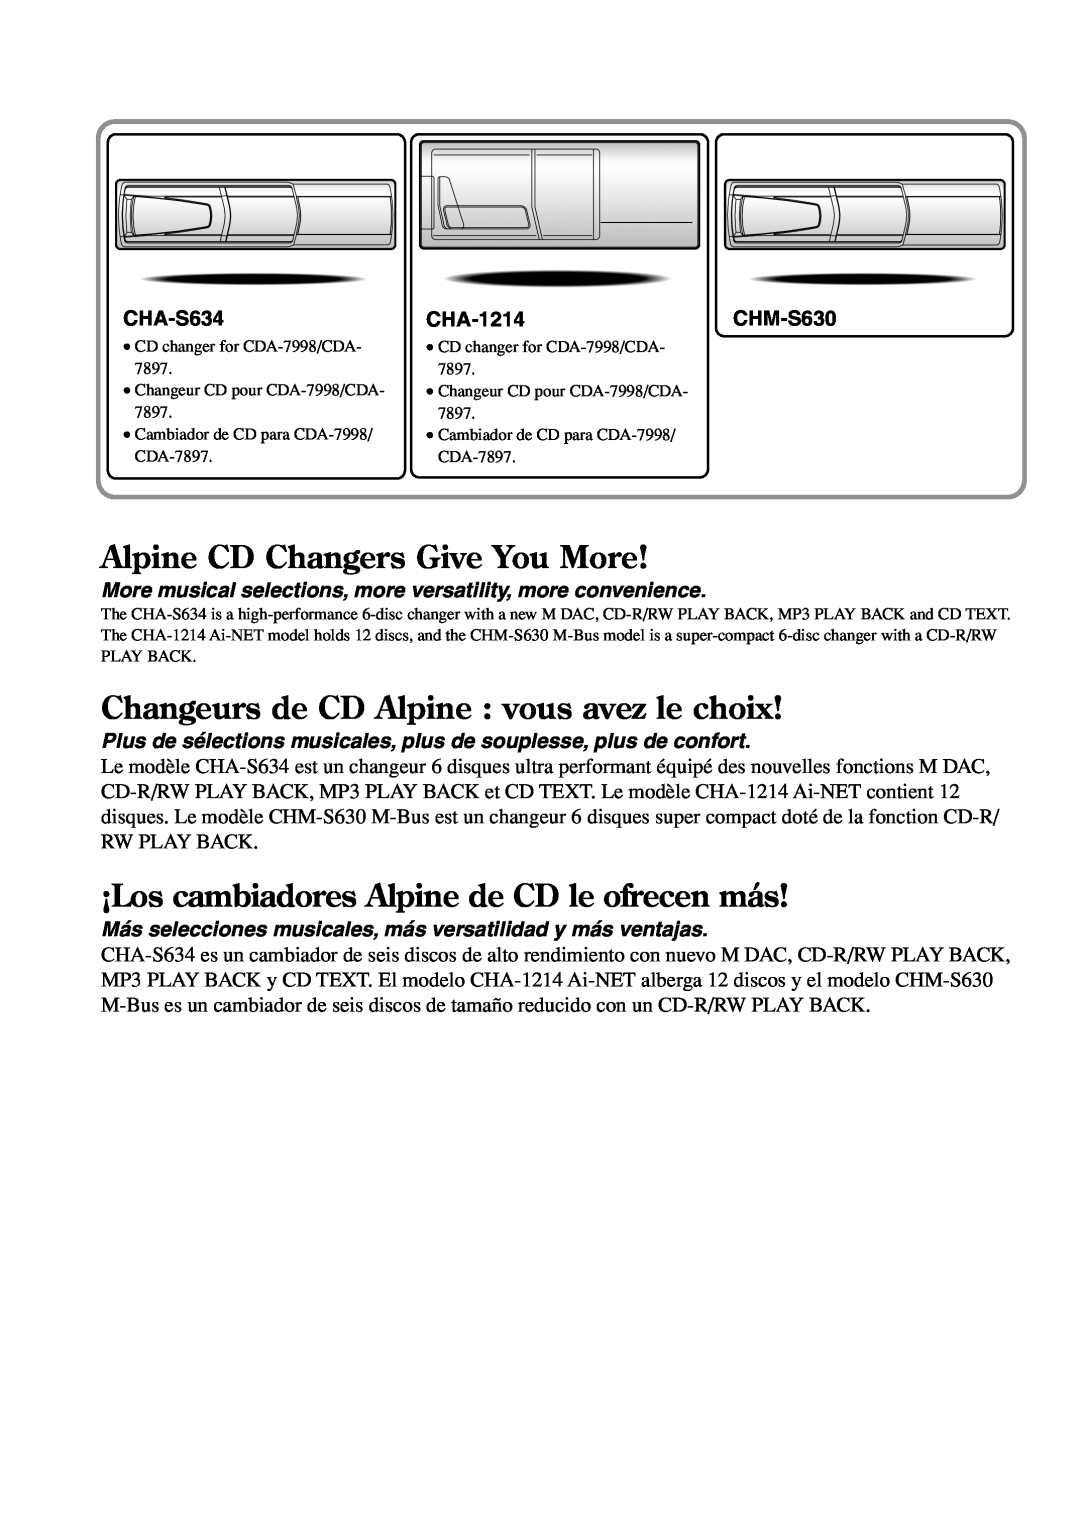 Alpine CDA-7998 Alpine CD Changers Give You More, Changeurs de CD Alpine vous avez le choix, CHA-S634, CHA-1214CHM-S630 